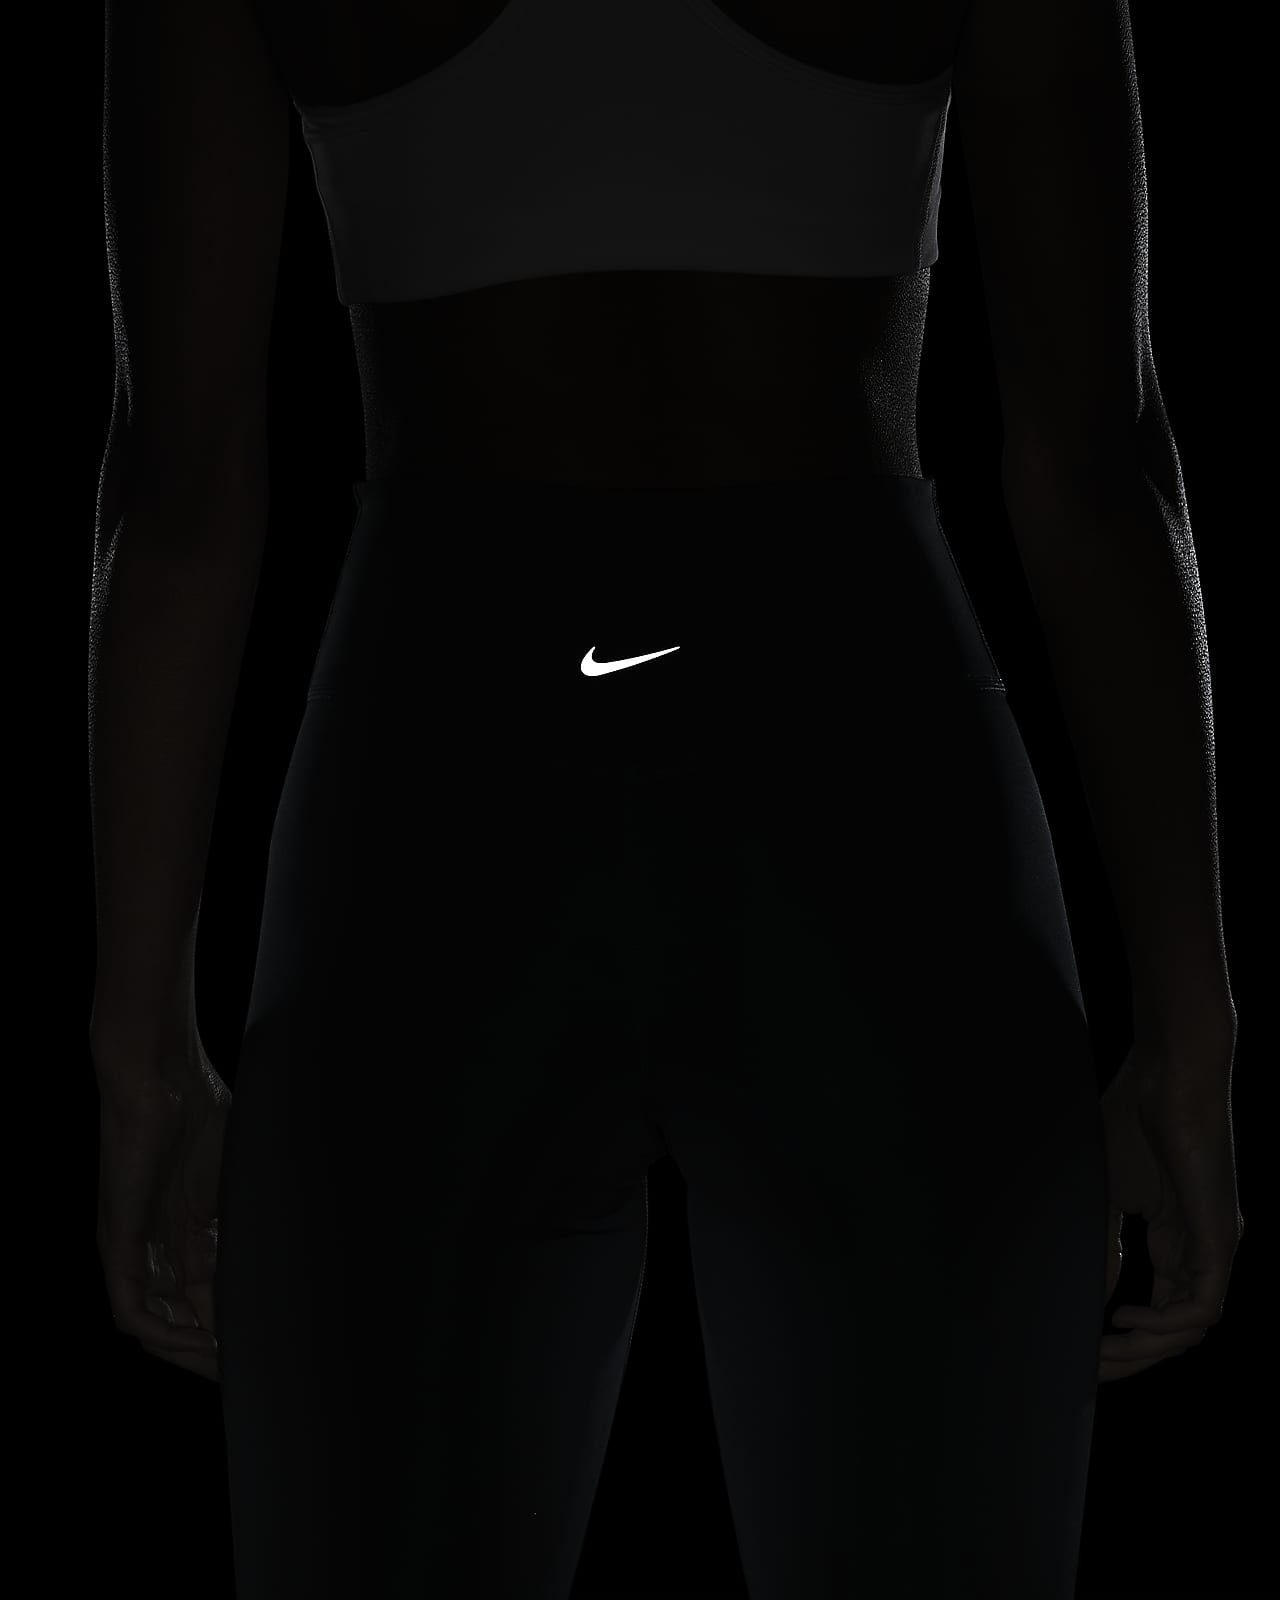 Nike 7/8 tights DRI-FIT SWOOSH RUN in black